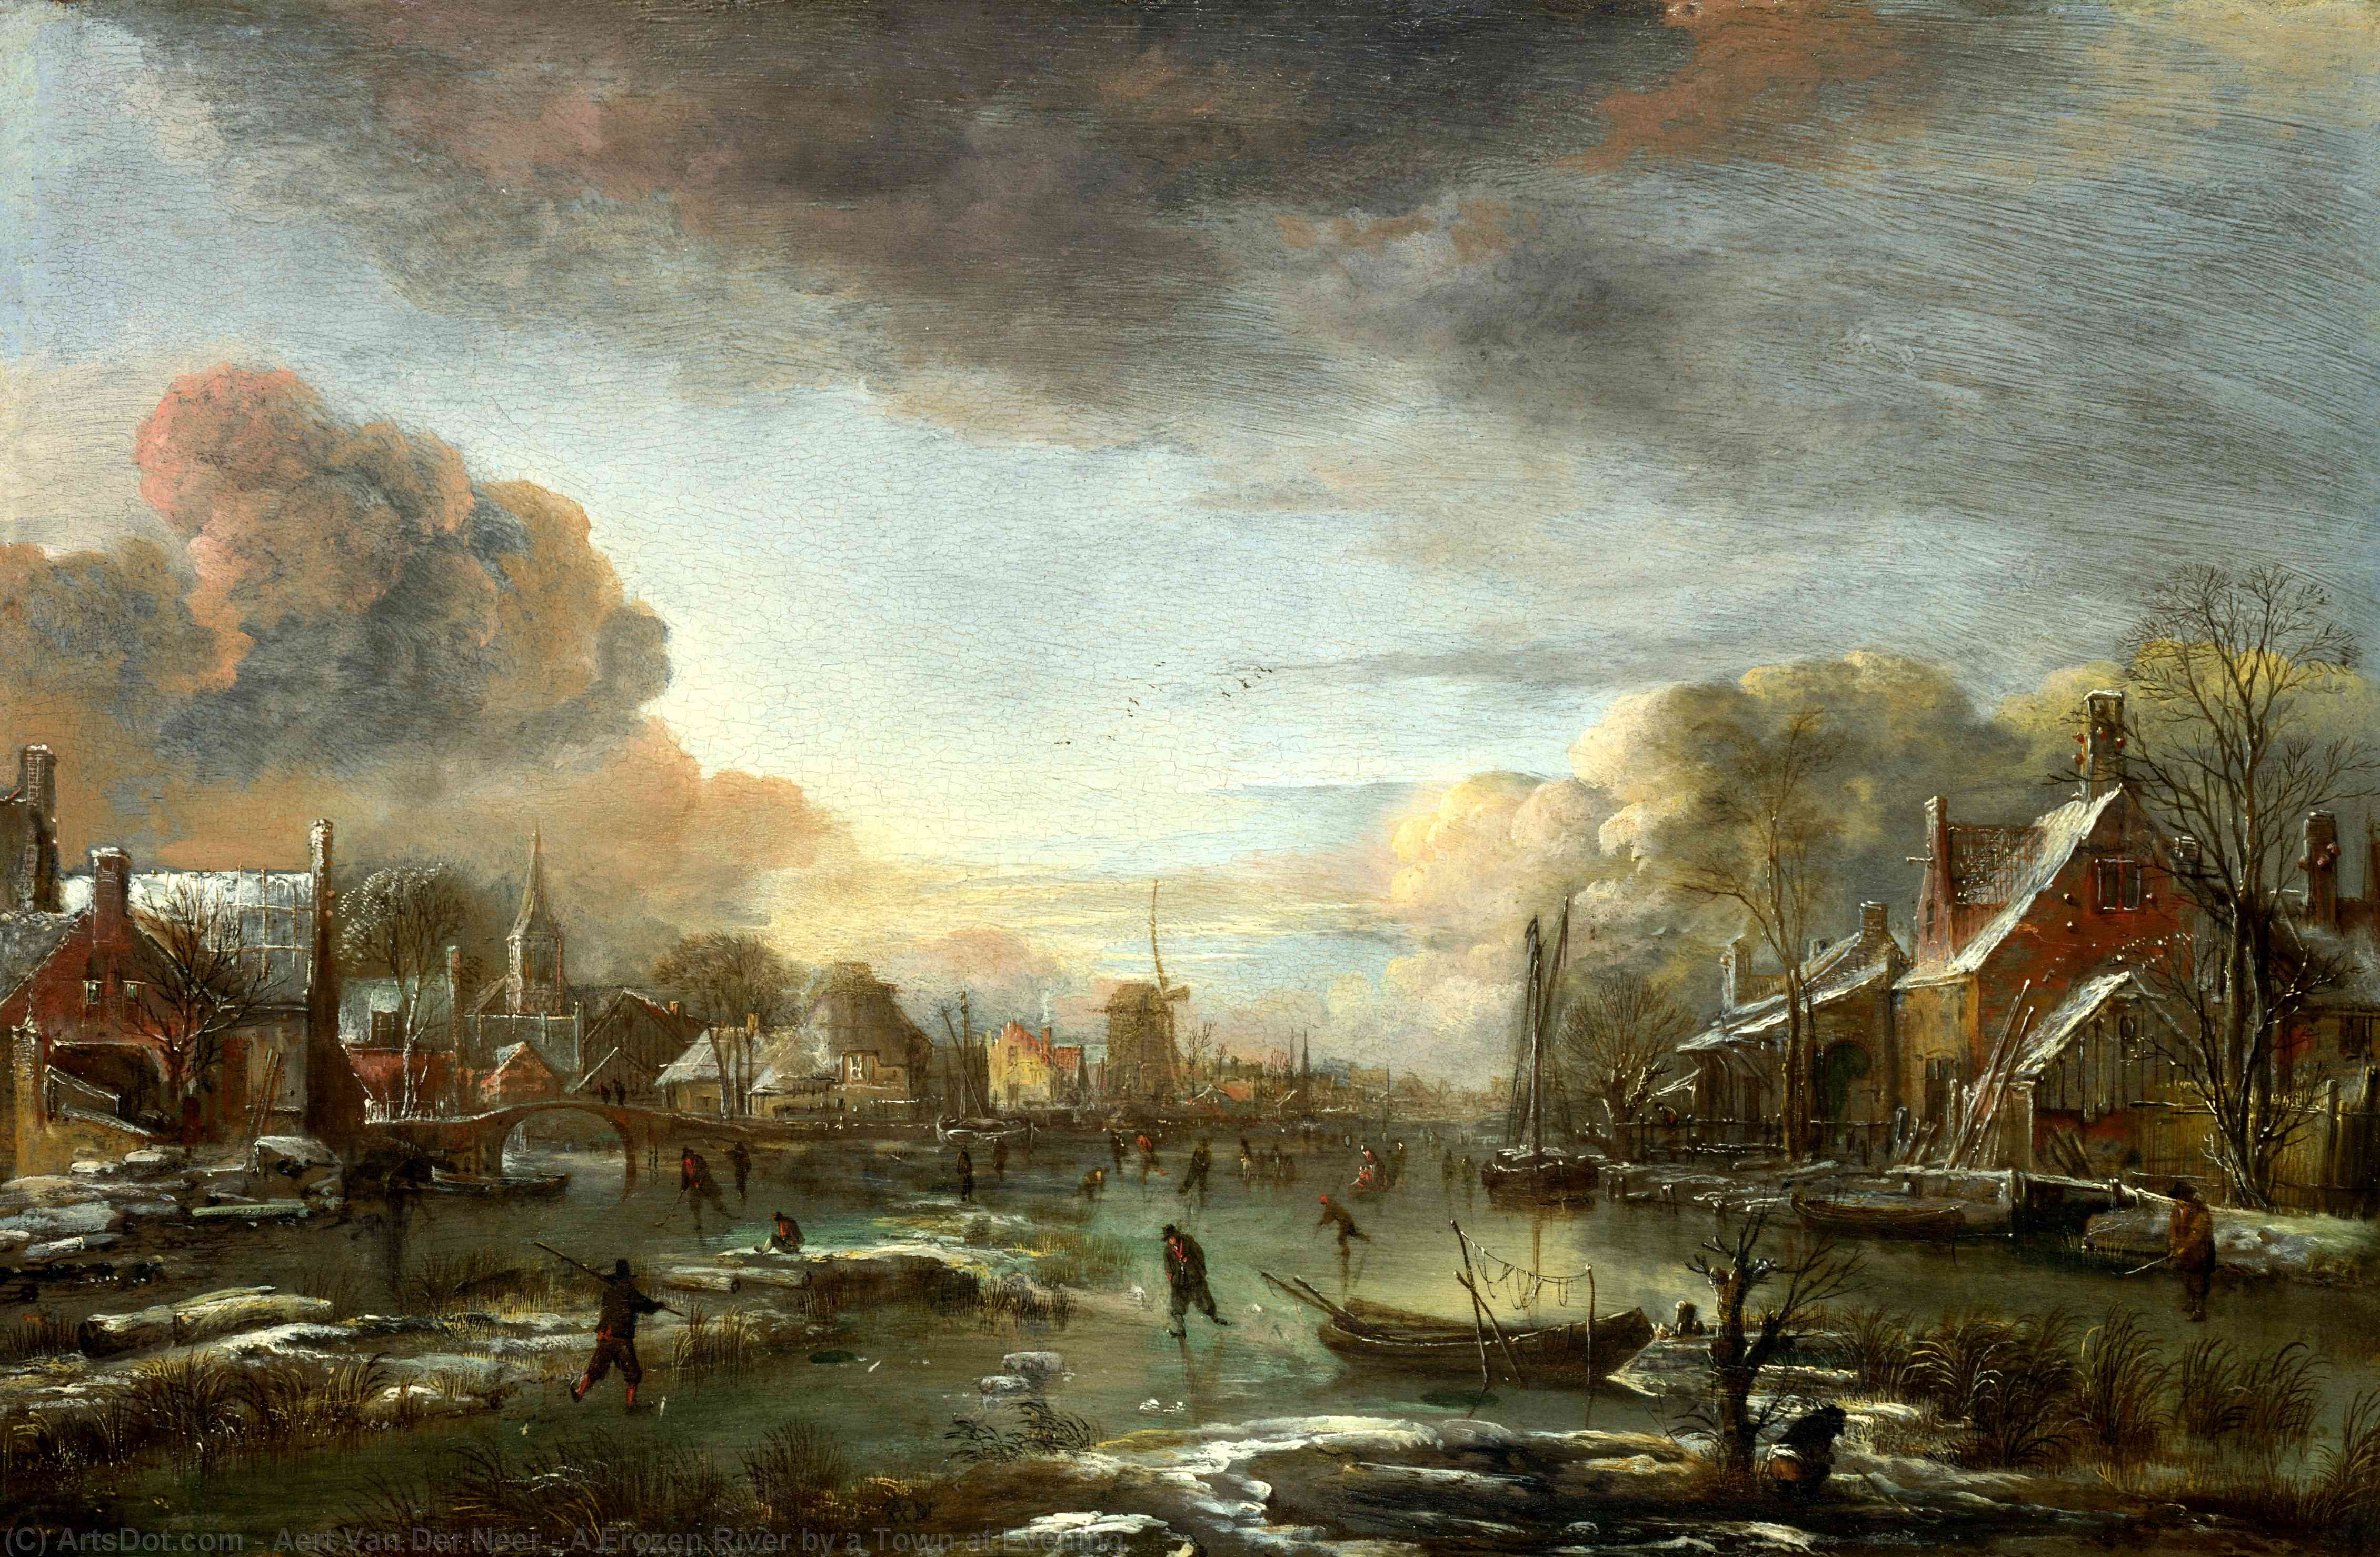 Buy Museum Art Reproductions A Frozen River by a Town at Evening by Aert Van Der Neer (1604-1677, Netherlands) | ArtsDot.com